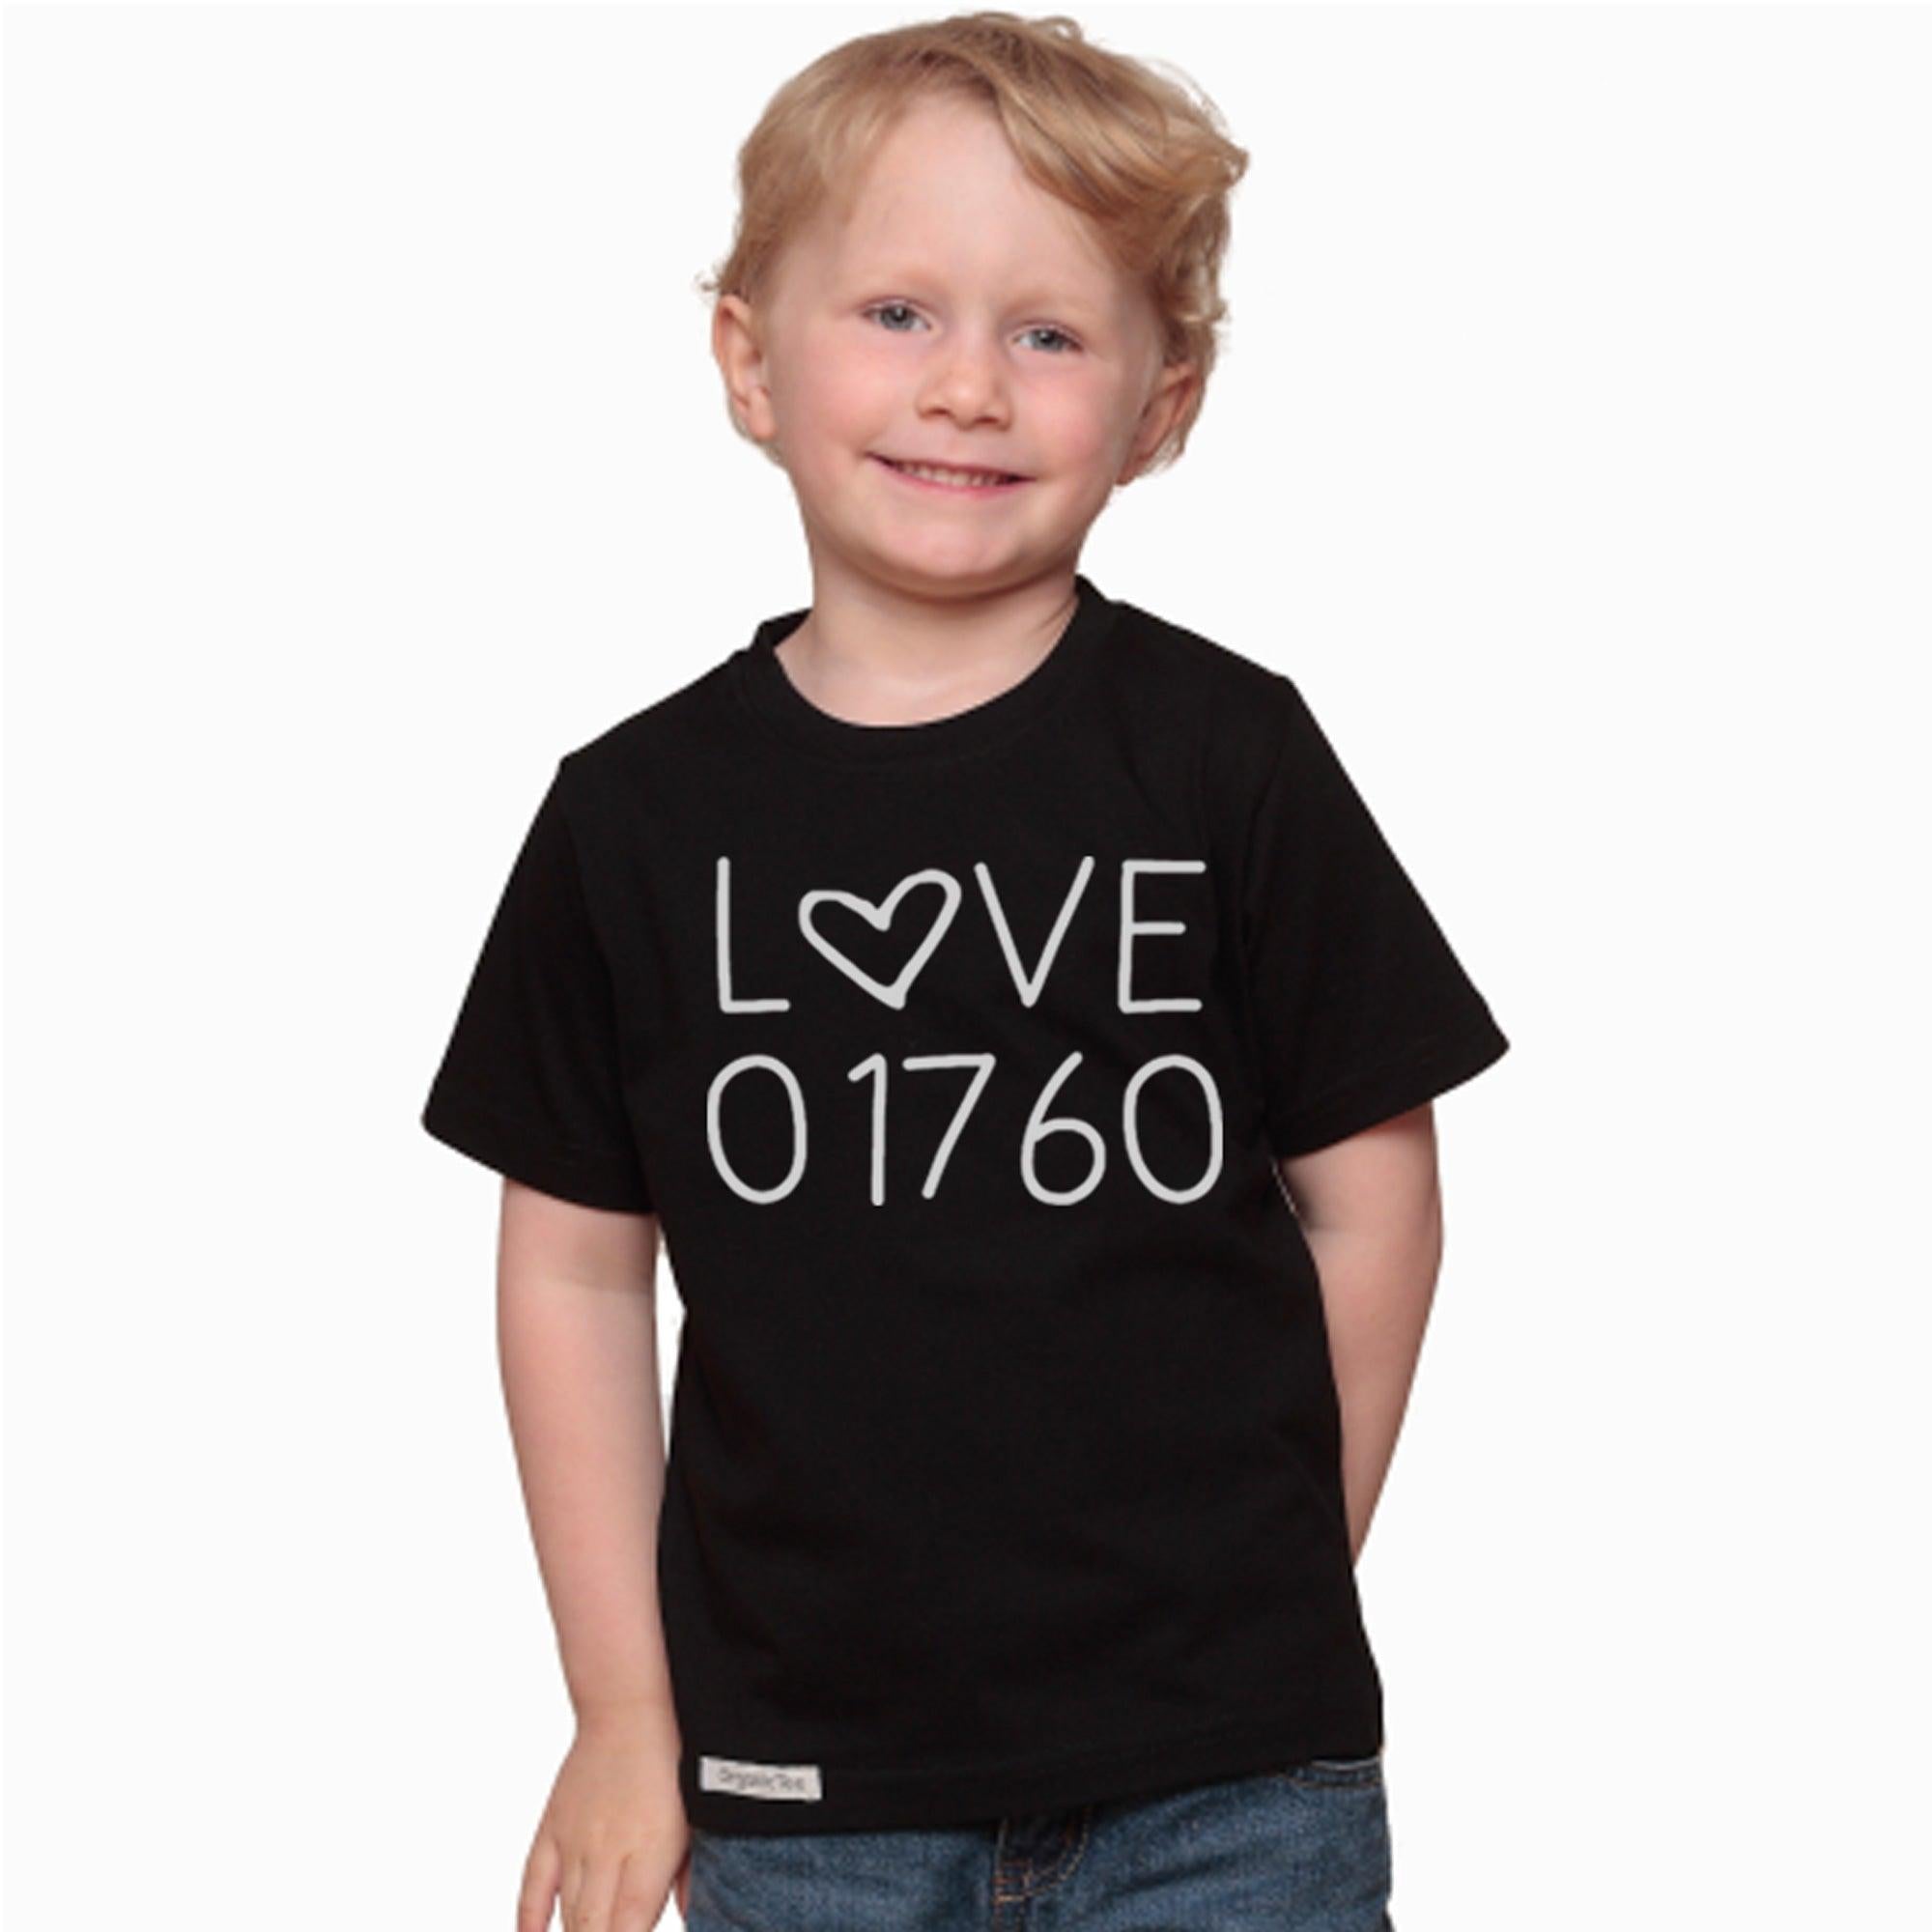 Love 01760 T-shirt for Kids Uni-T KSS